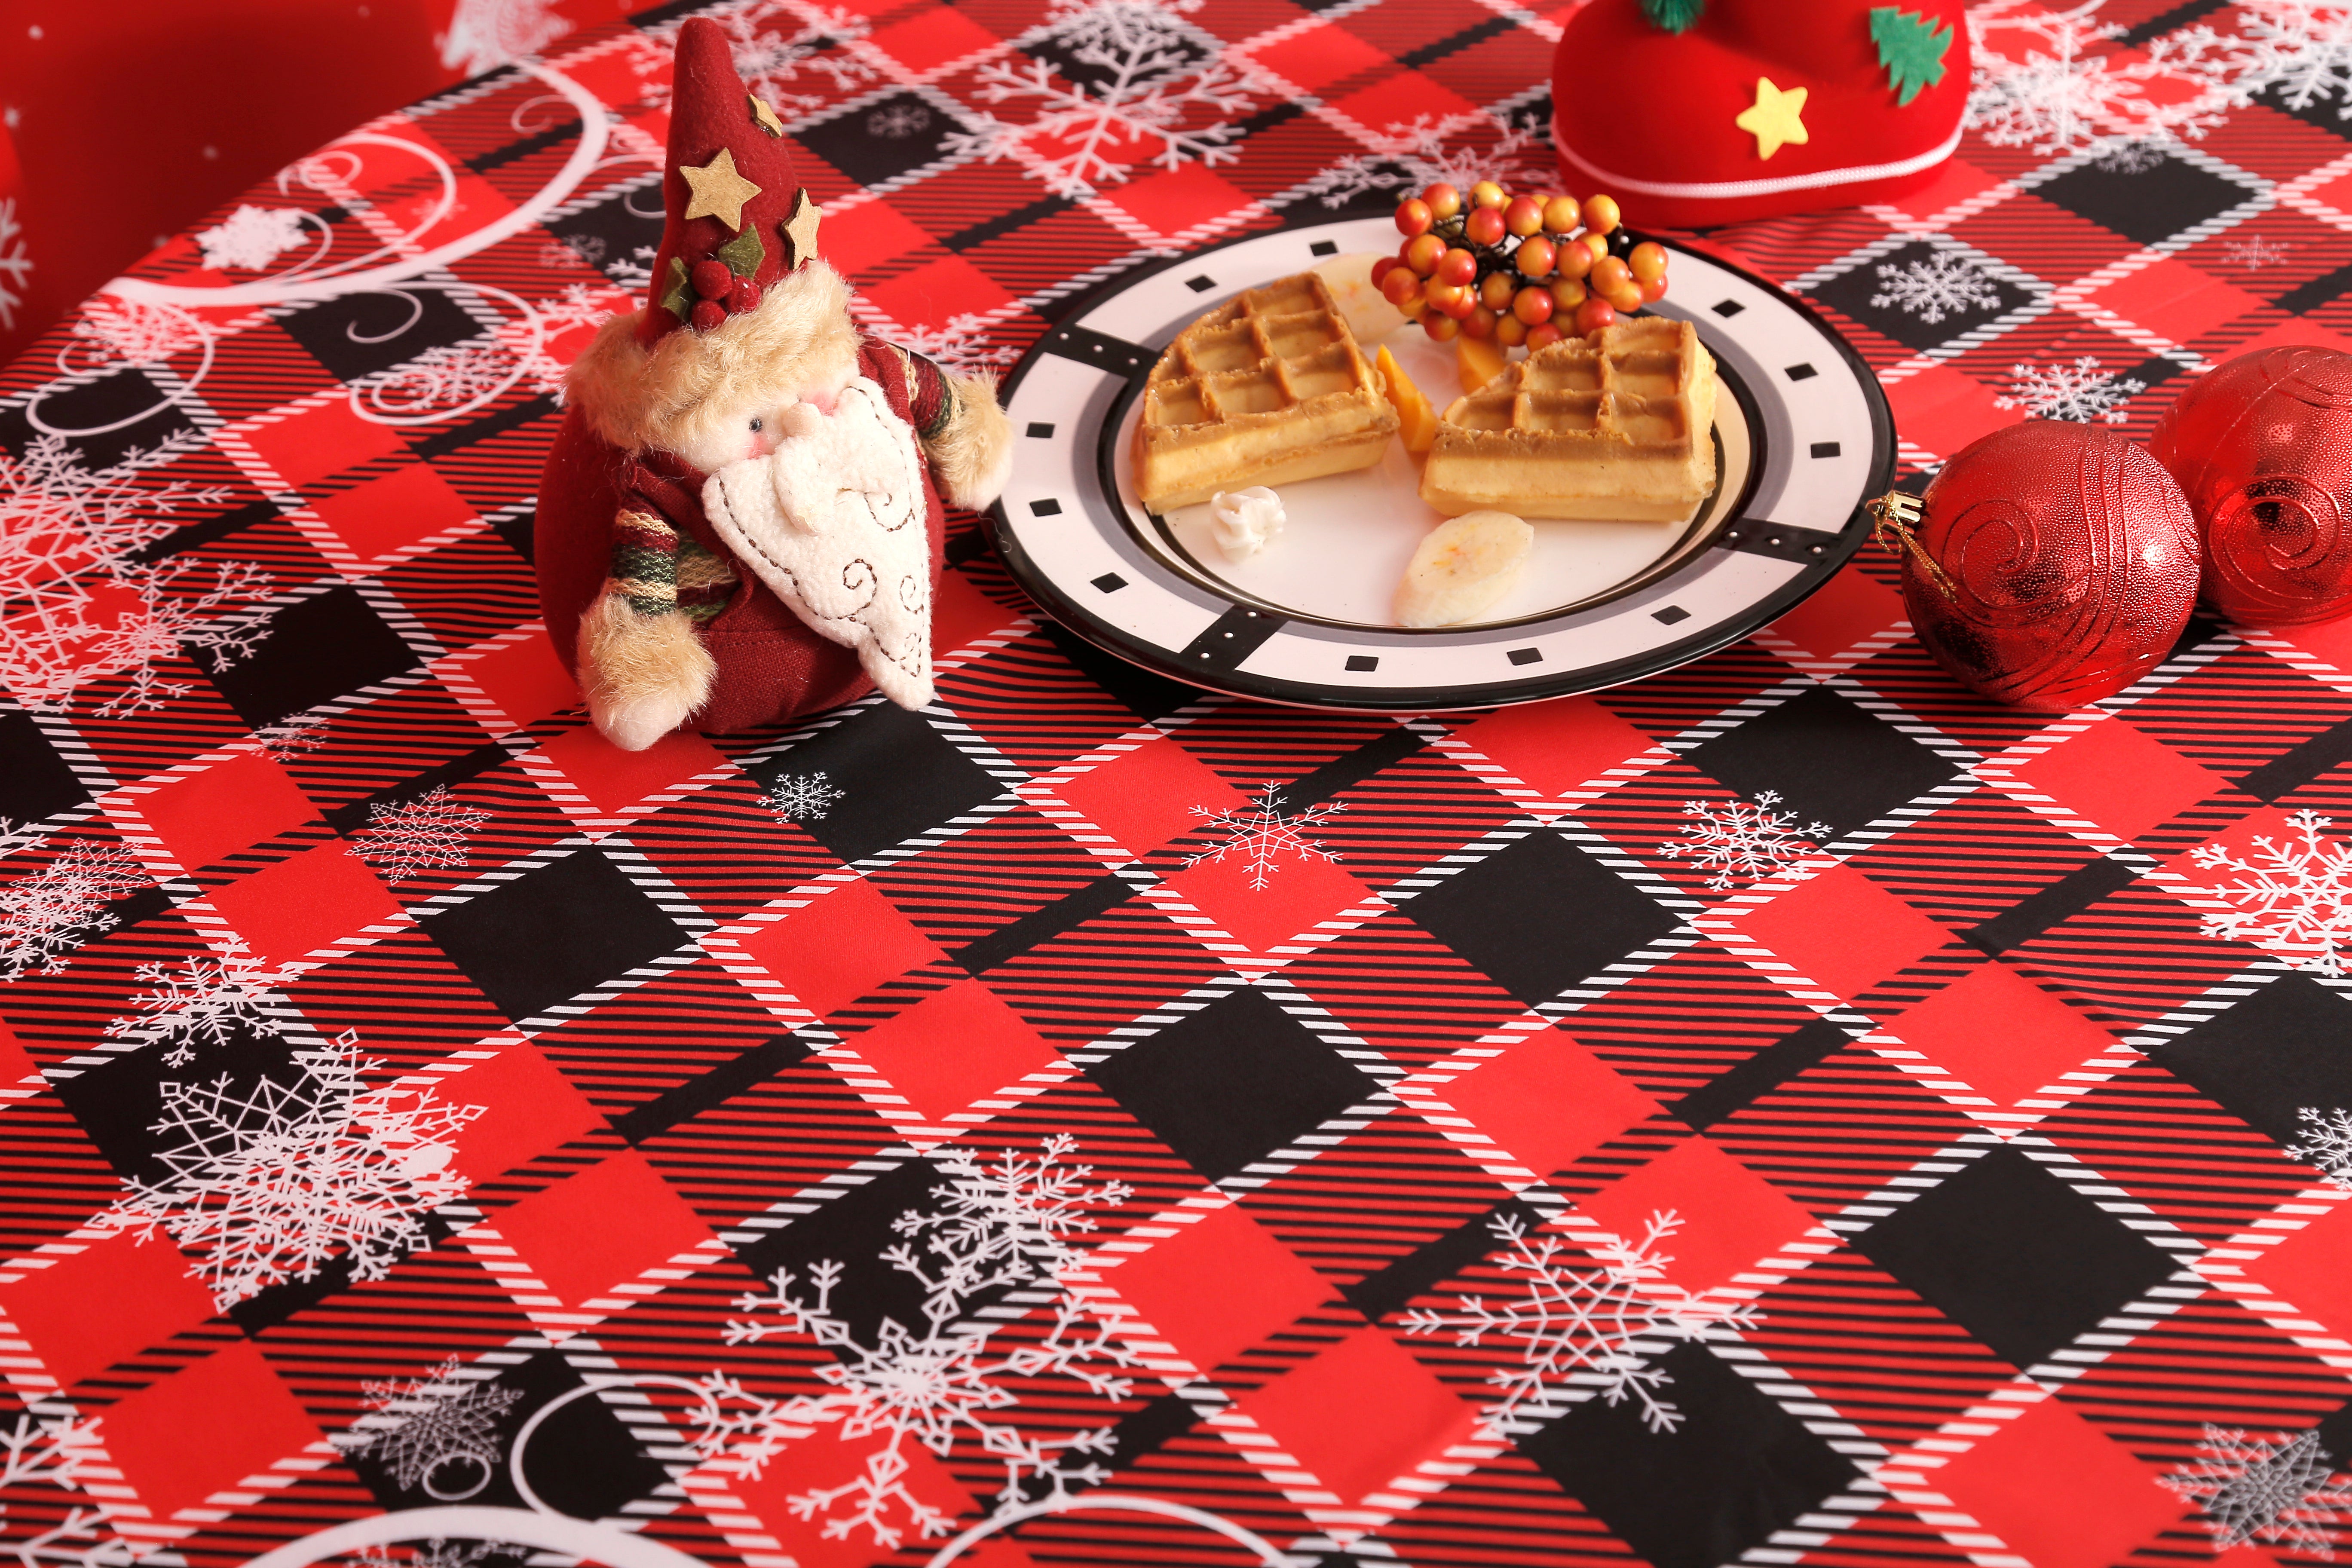 圣诞仙境图案-圆桌布-红格子